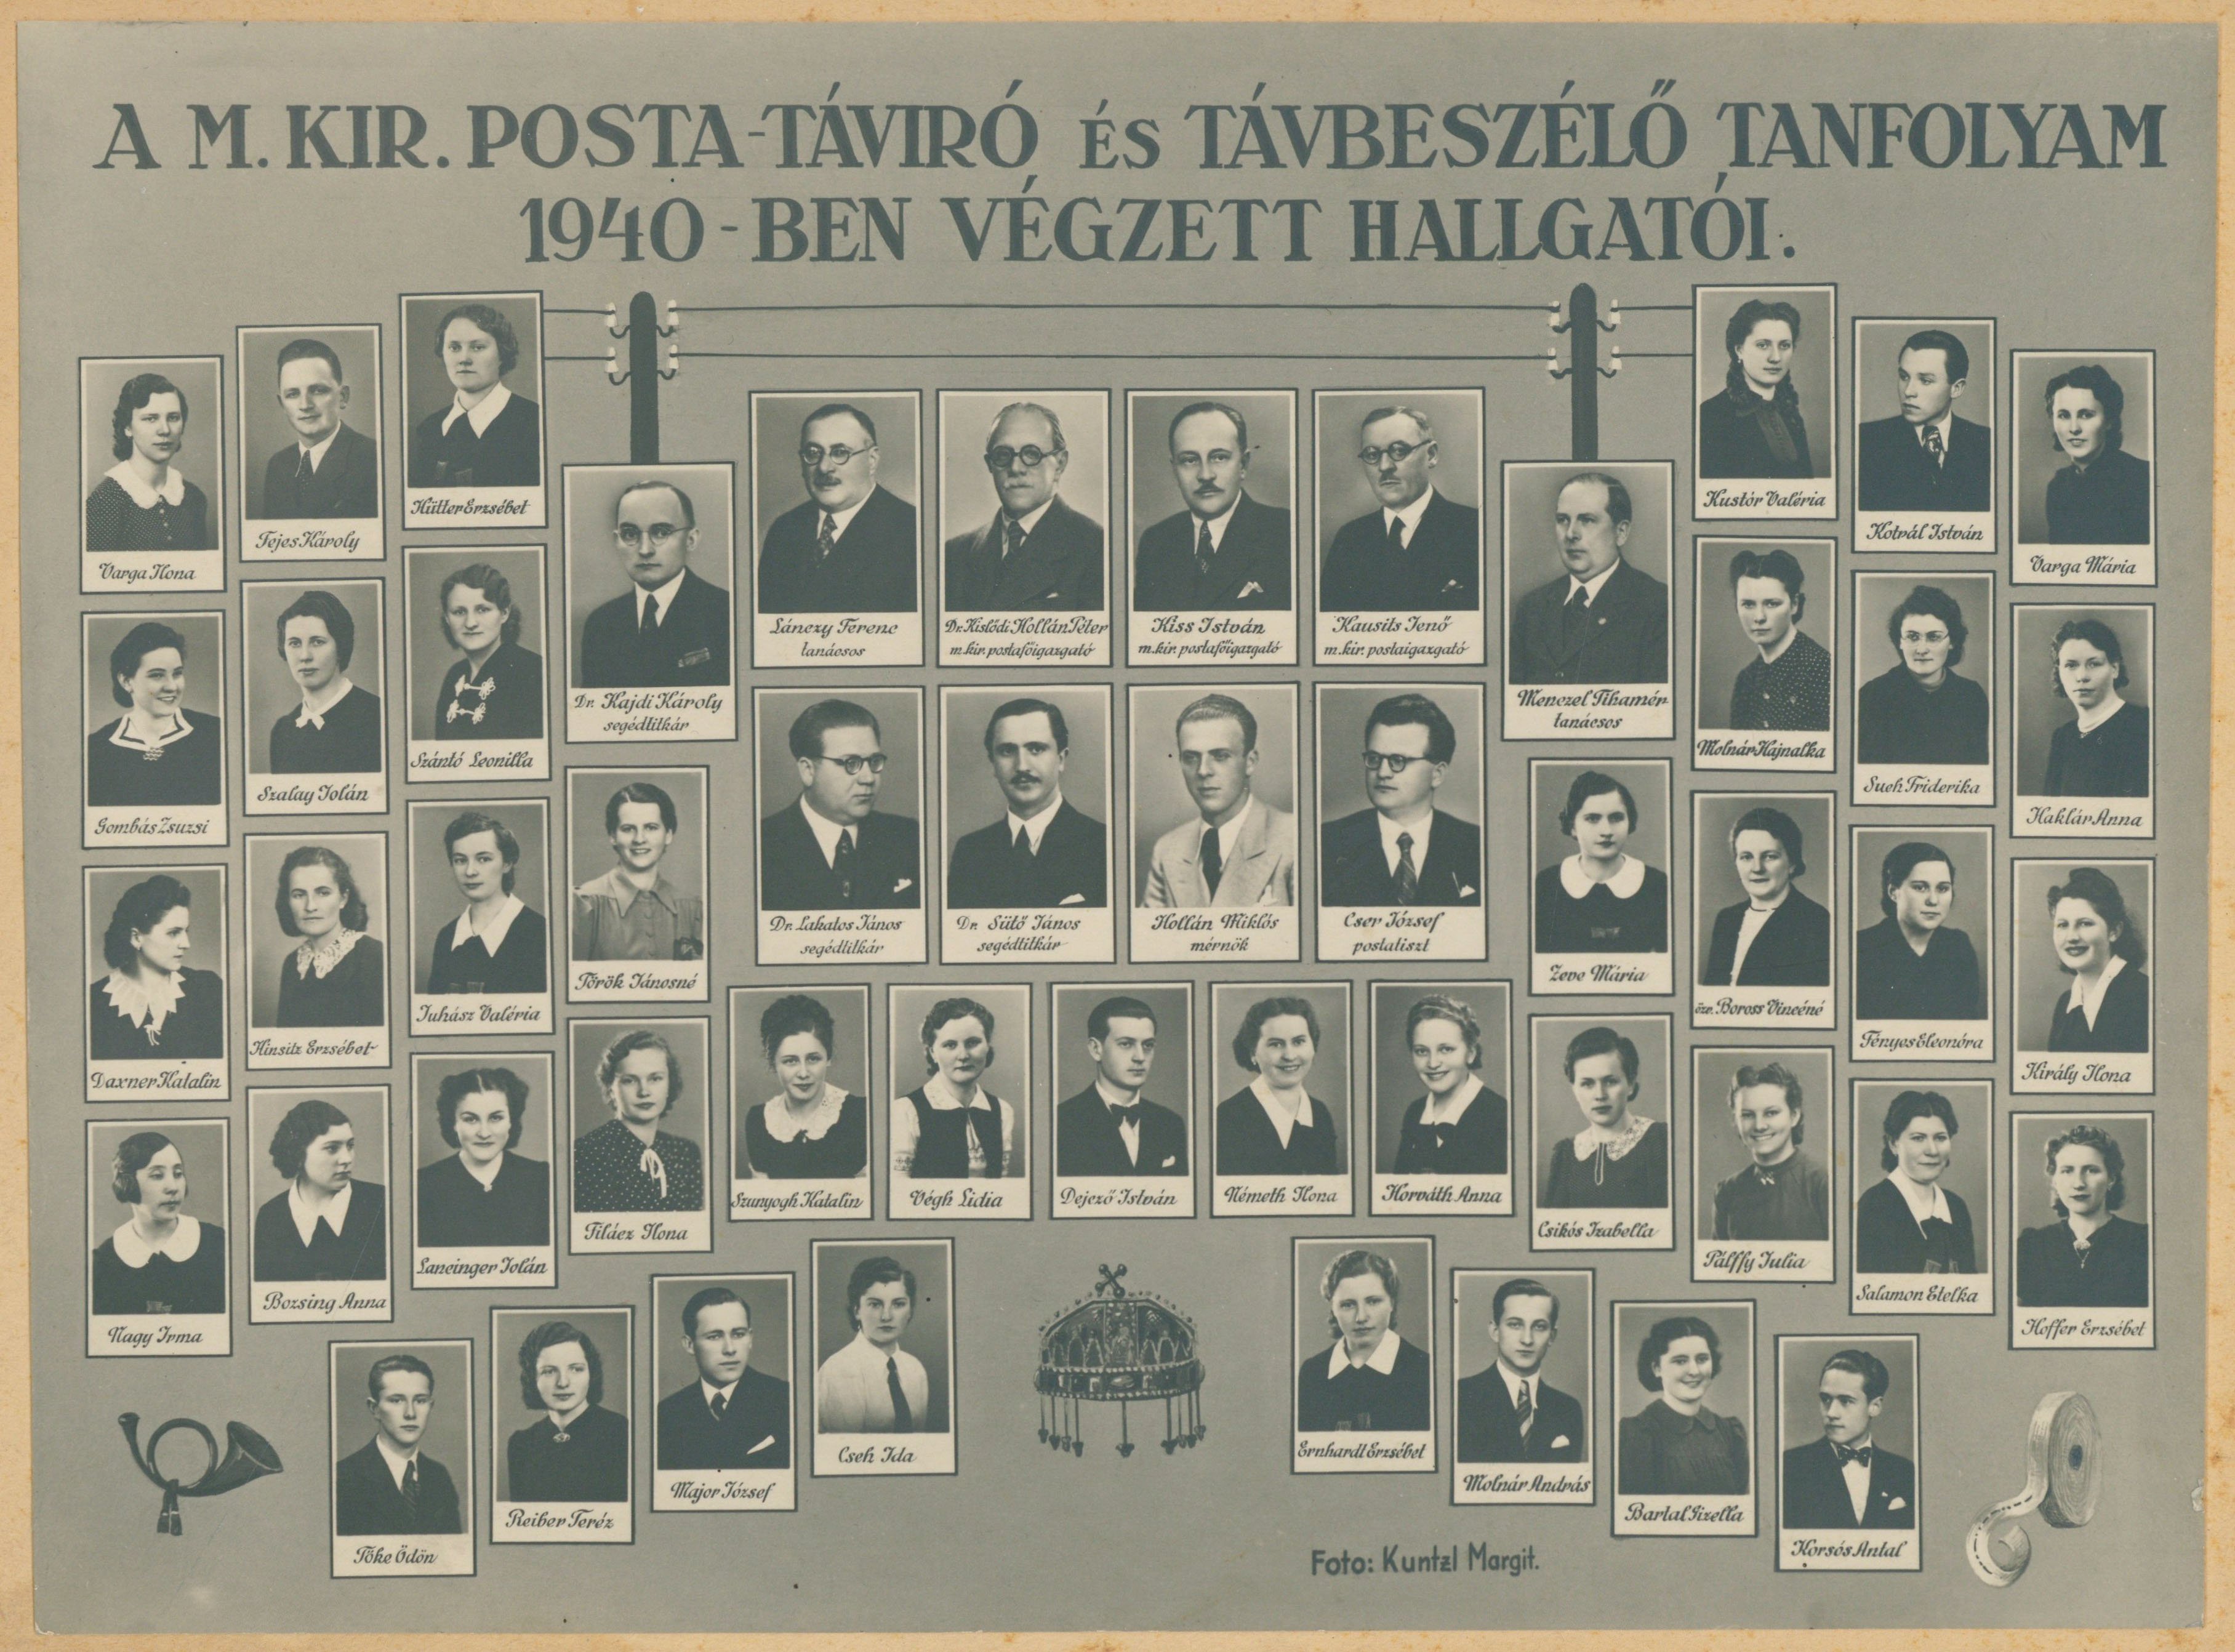 Soproni m. kir. posta, távíró- és távbeszélő tanfolyam tablóképe 1940-ben (Postamúzeum CC BY-NC-SA)